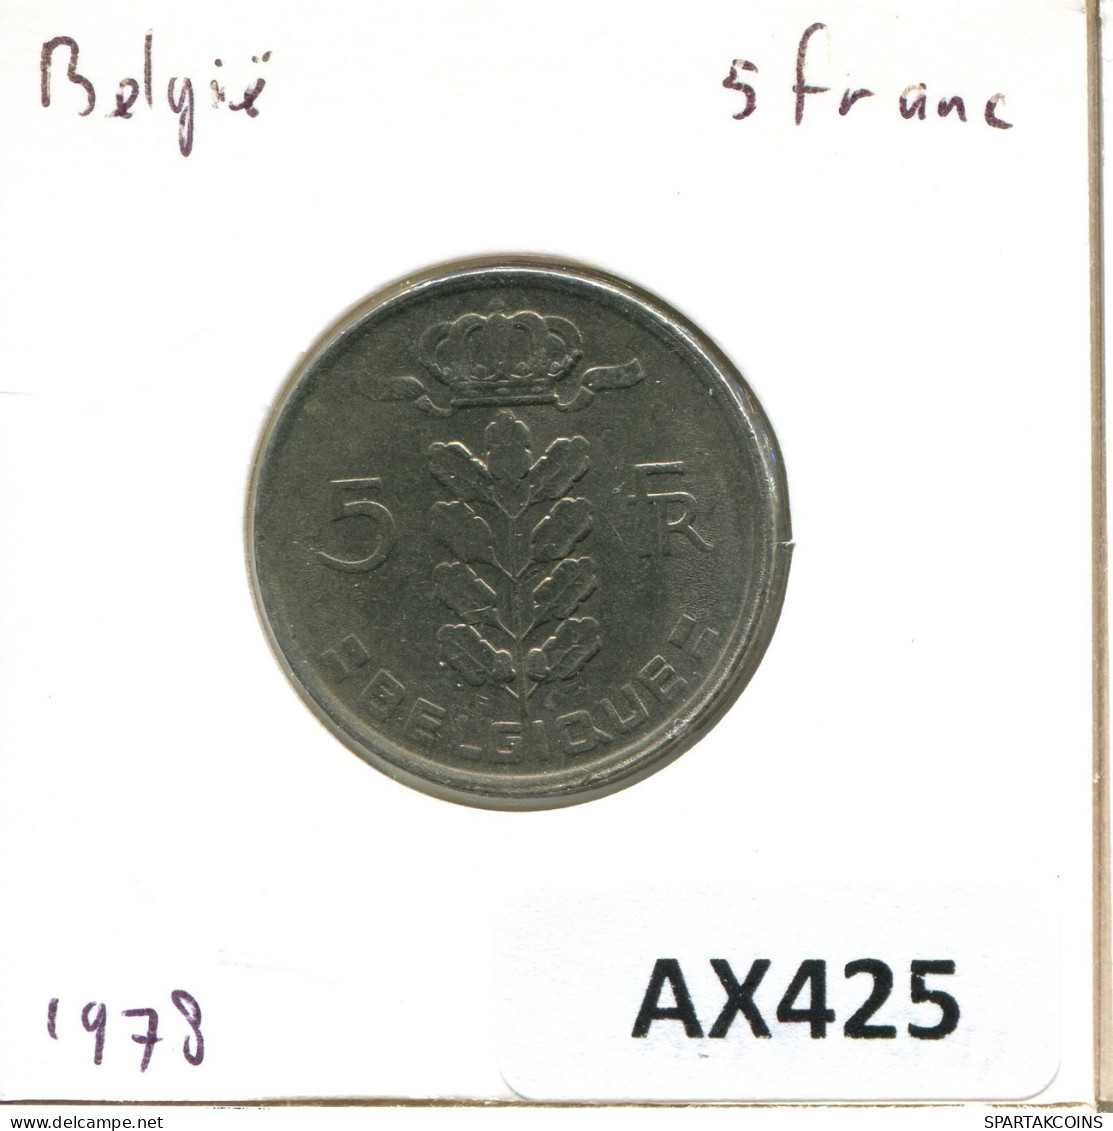 5 FRANCS 1978 BELGIUM Coin FRENCH Text #AX425.U.A - 5 Francs